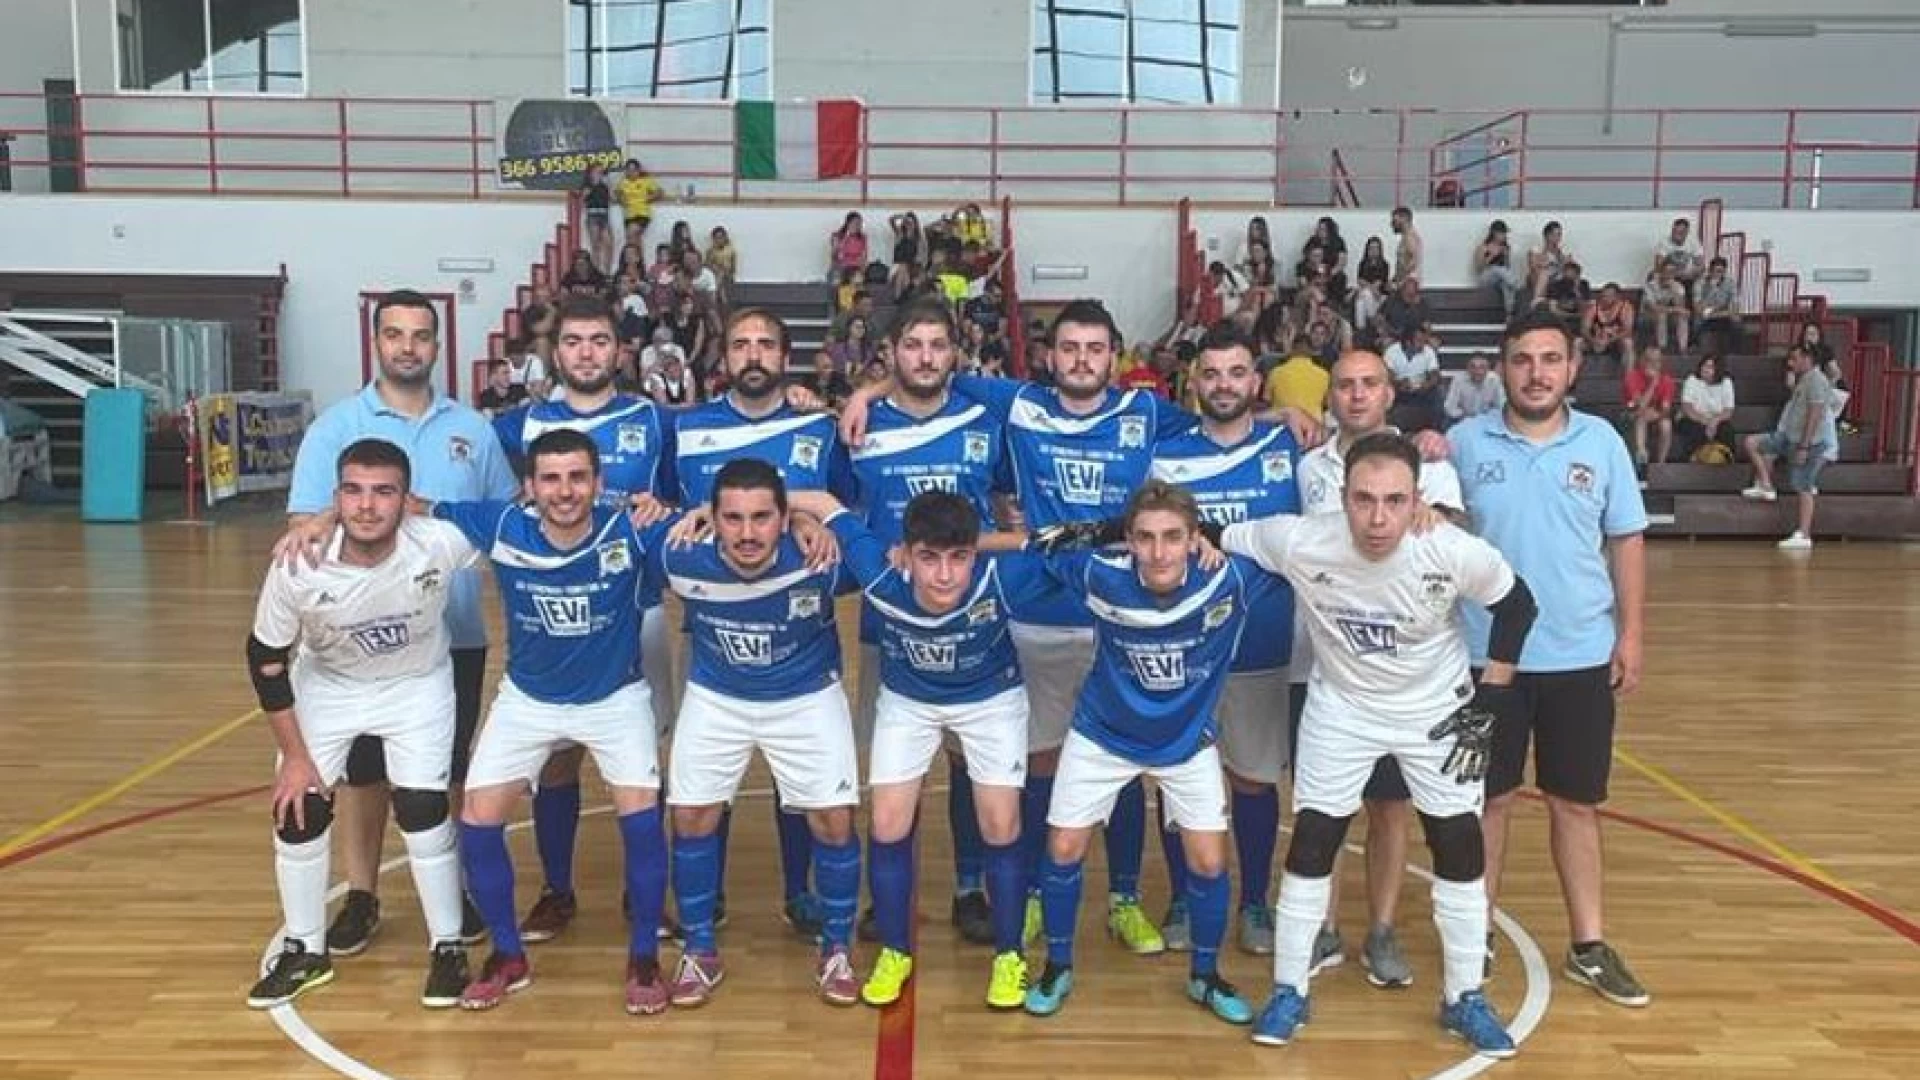 Spareggi nazionali, la Futsal Colli sconfitta a Celano. Termina una stagiona gloriosa. Ora al lavoro per progettare il futuro.